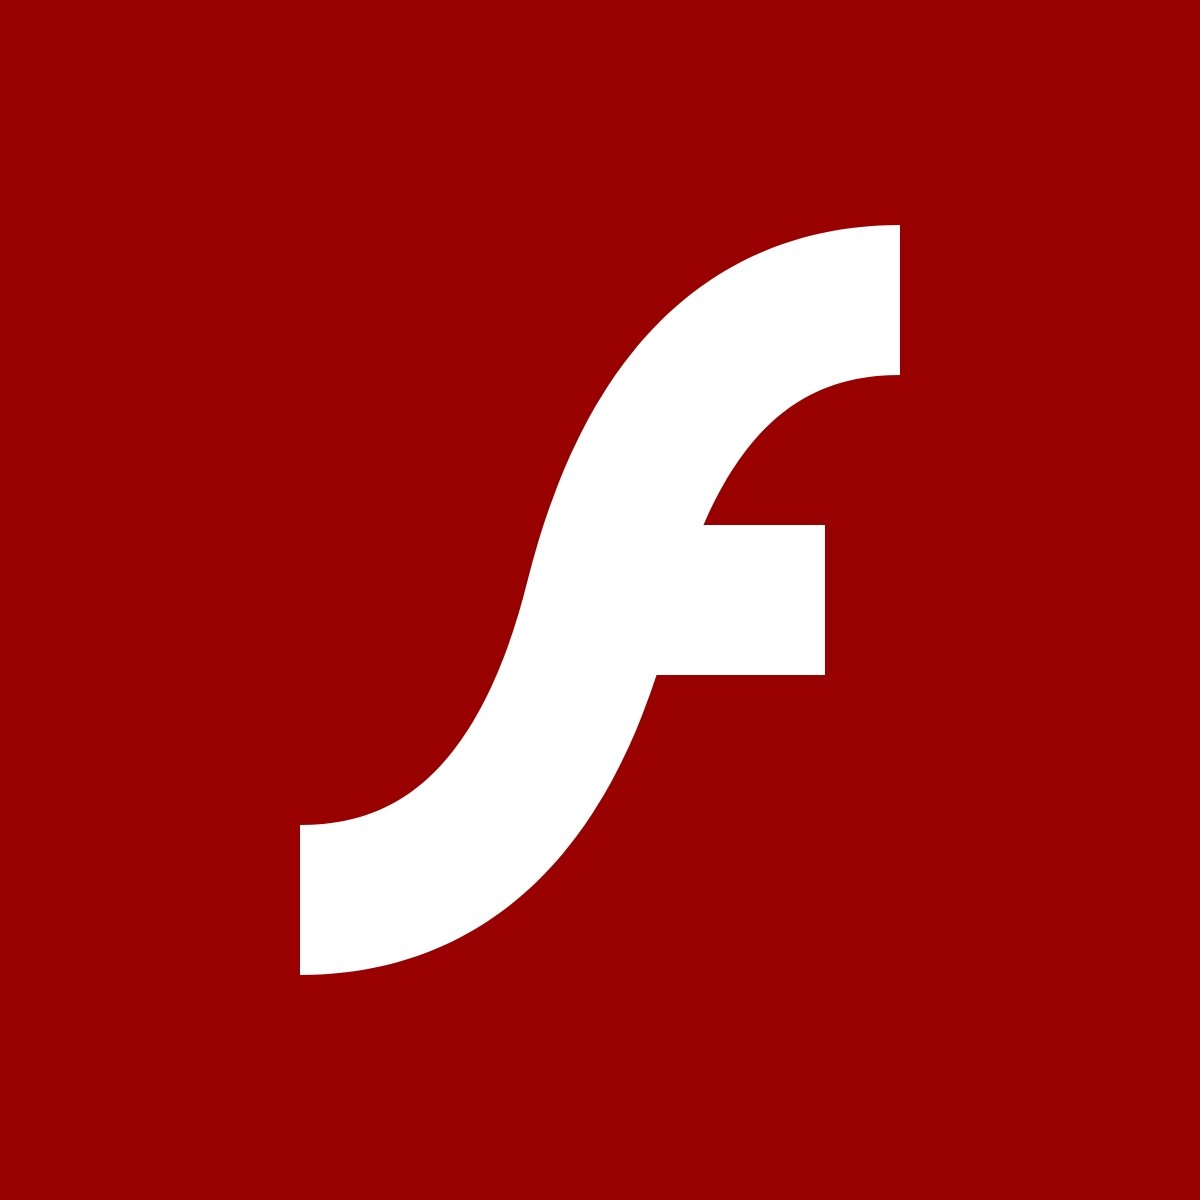 Adobe flash player скачать для браузера тор hyrda скачать бесплатно и без регистраций браузер тор hyrda